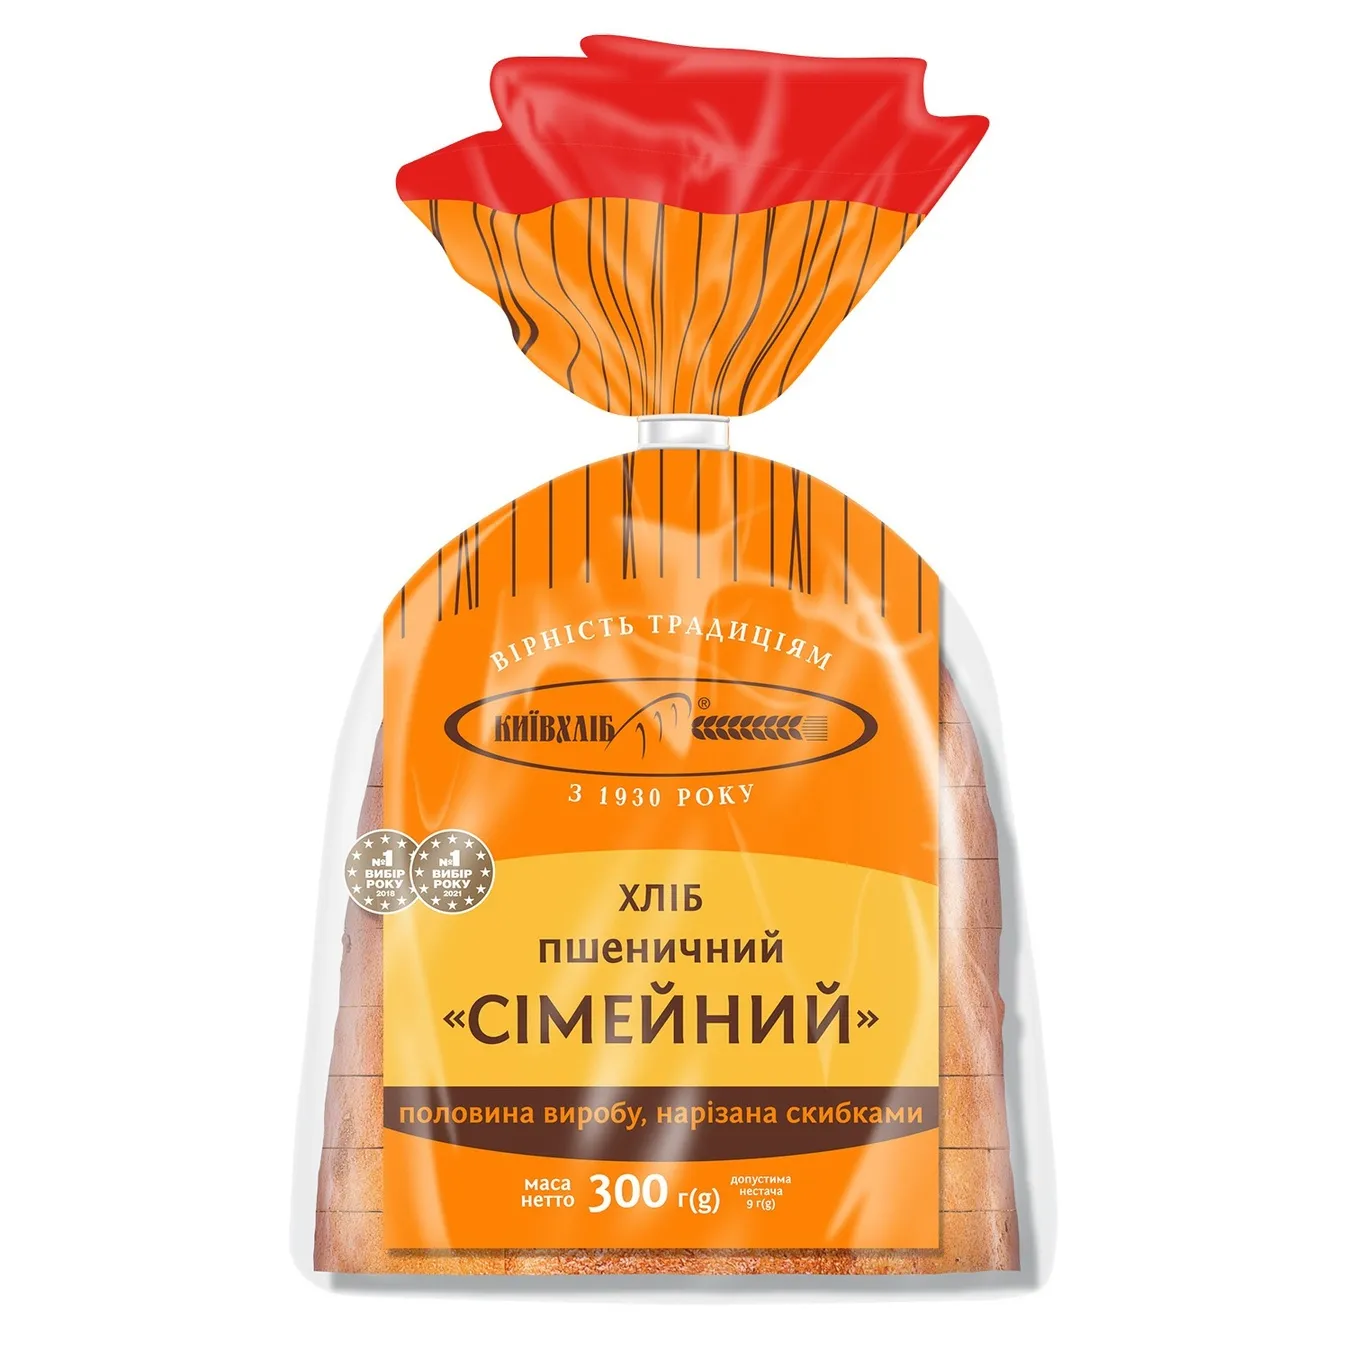 Хліб пшеничний Київхліб Сімейний половина виробу нарізаний скибками в упаковці 300г